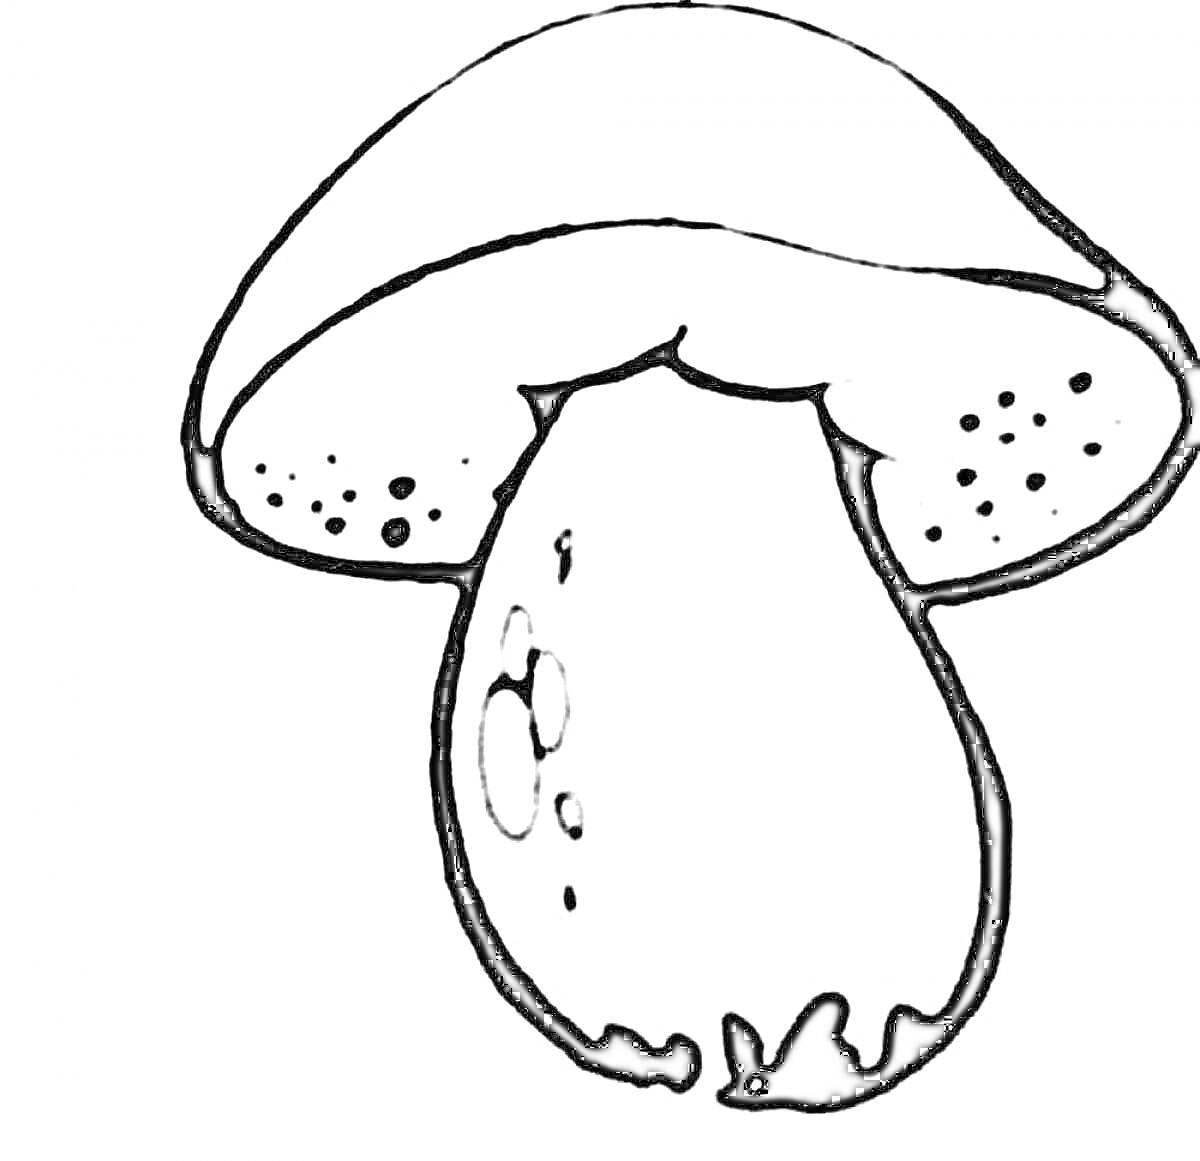 Раскраска Большой гриб с точками на шляпке и каплями на ножке